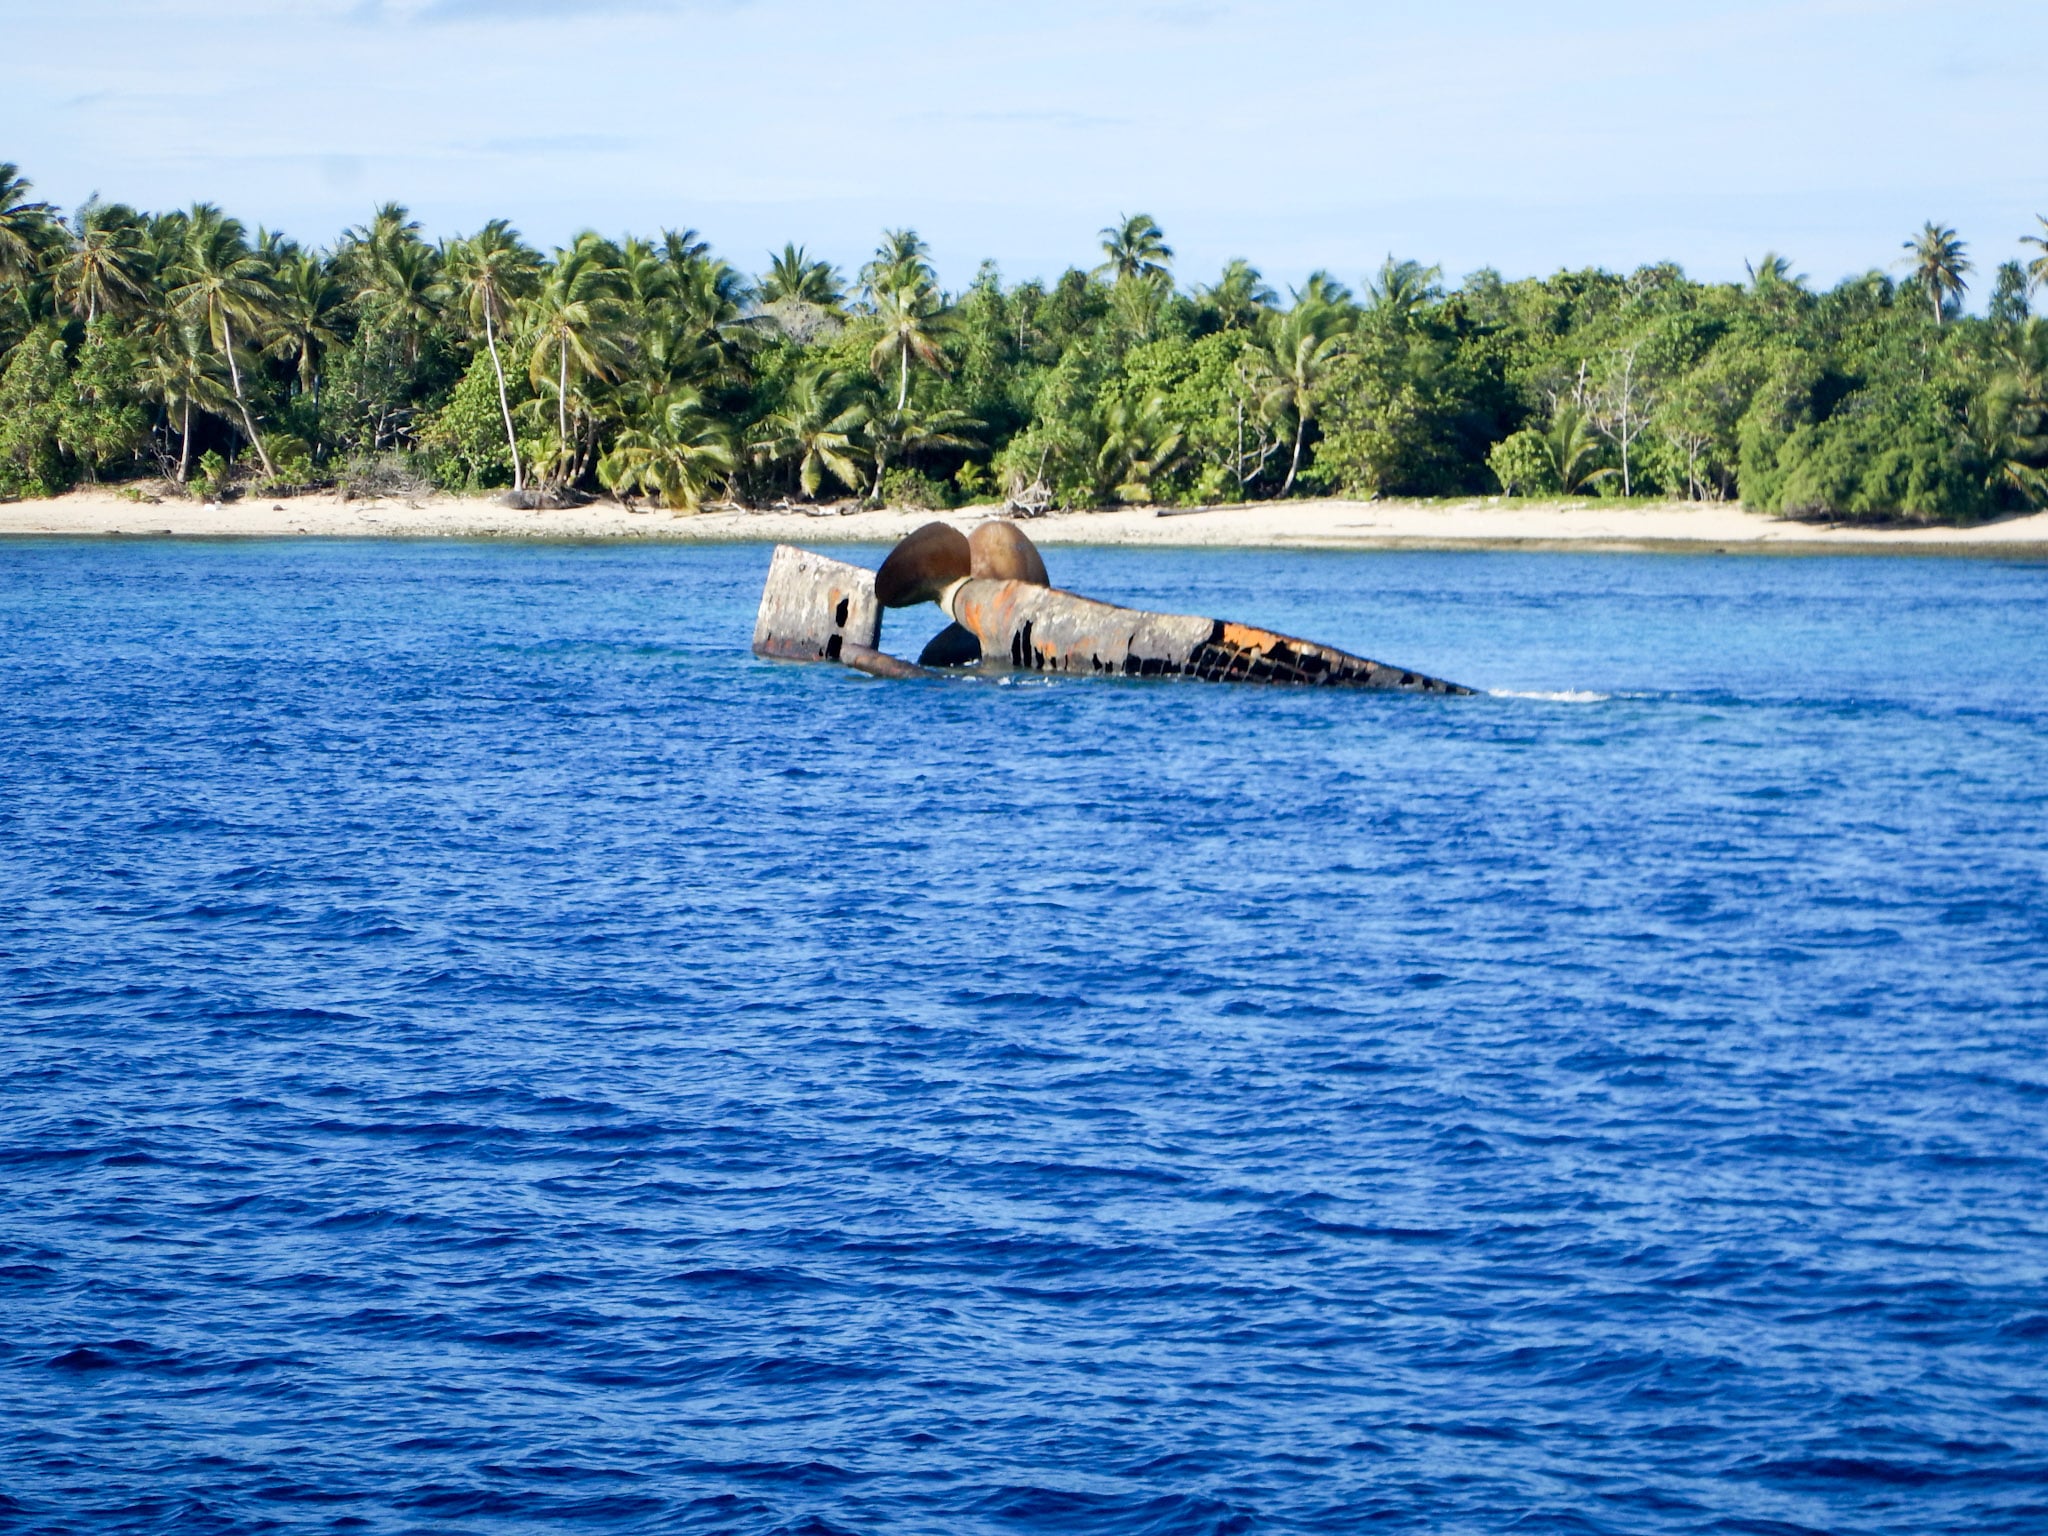 Bikini atoll eco system